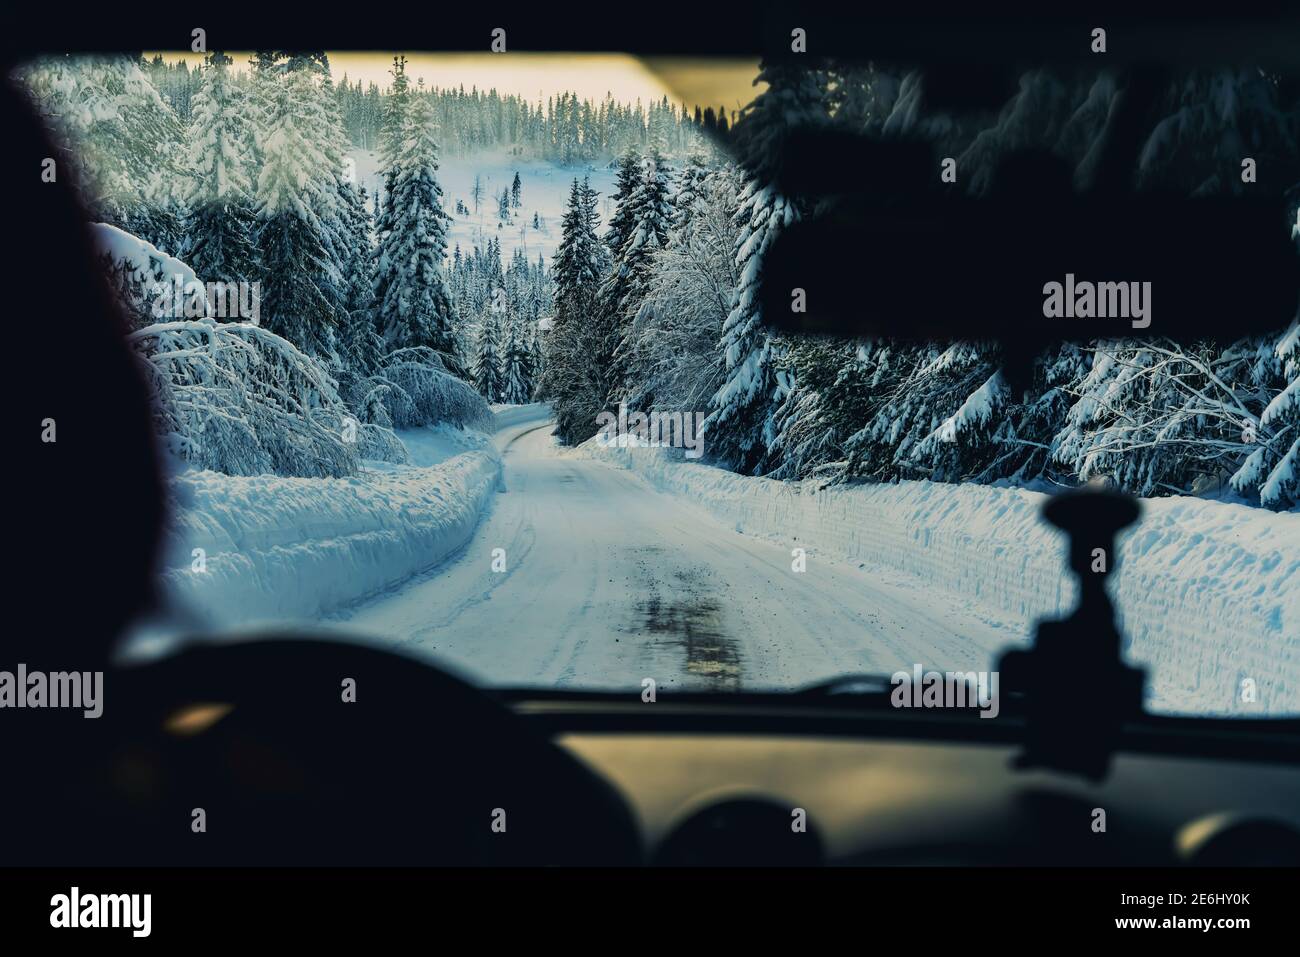 Tauchen auf einer verschneiten Straße durch ein Winterwunderland. Fahrersicht. Stockfoto